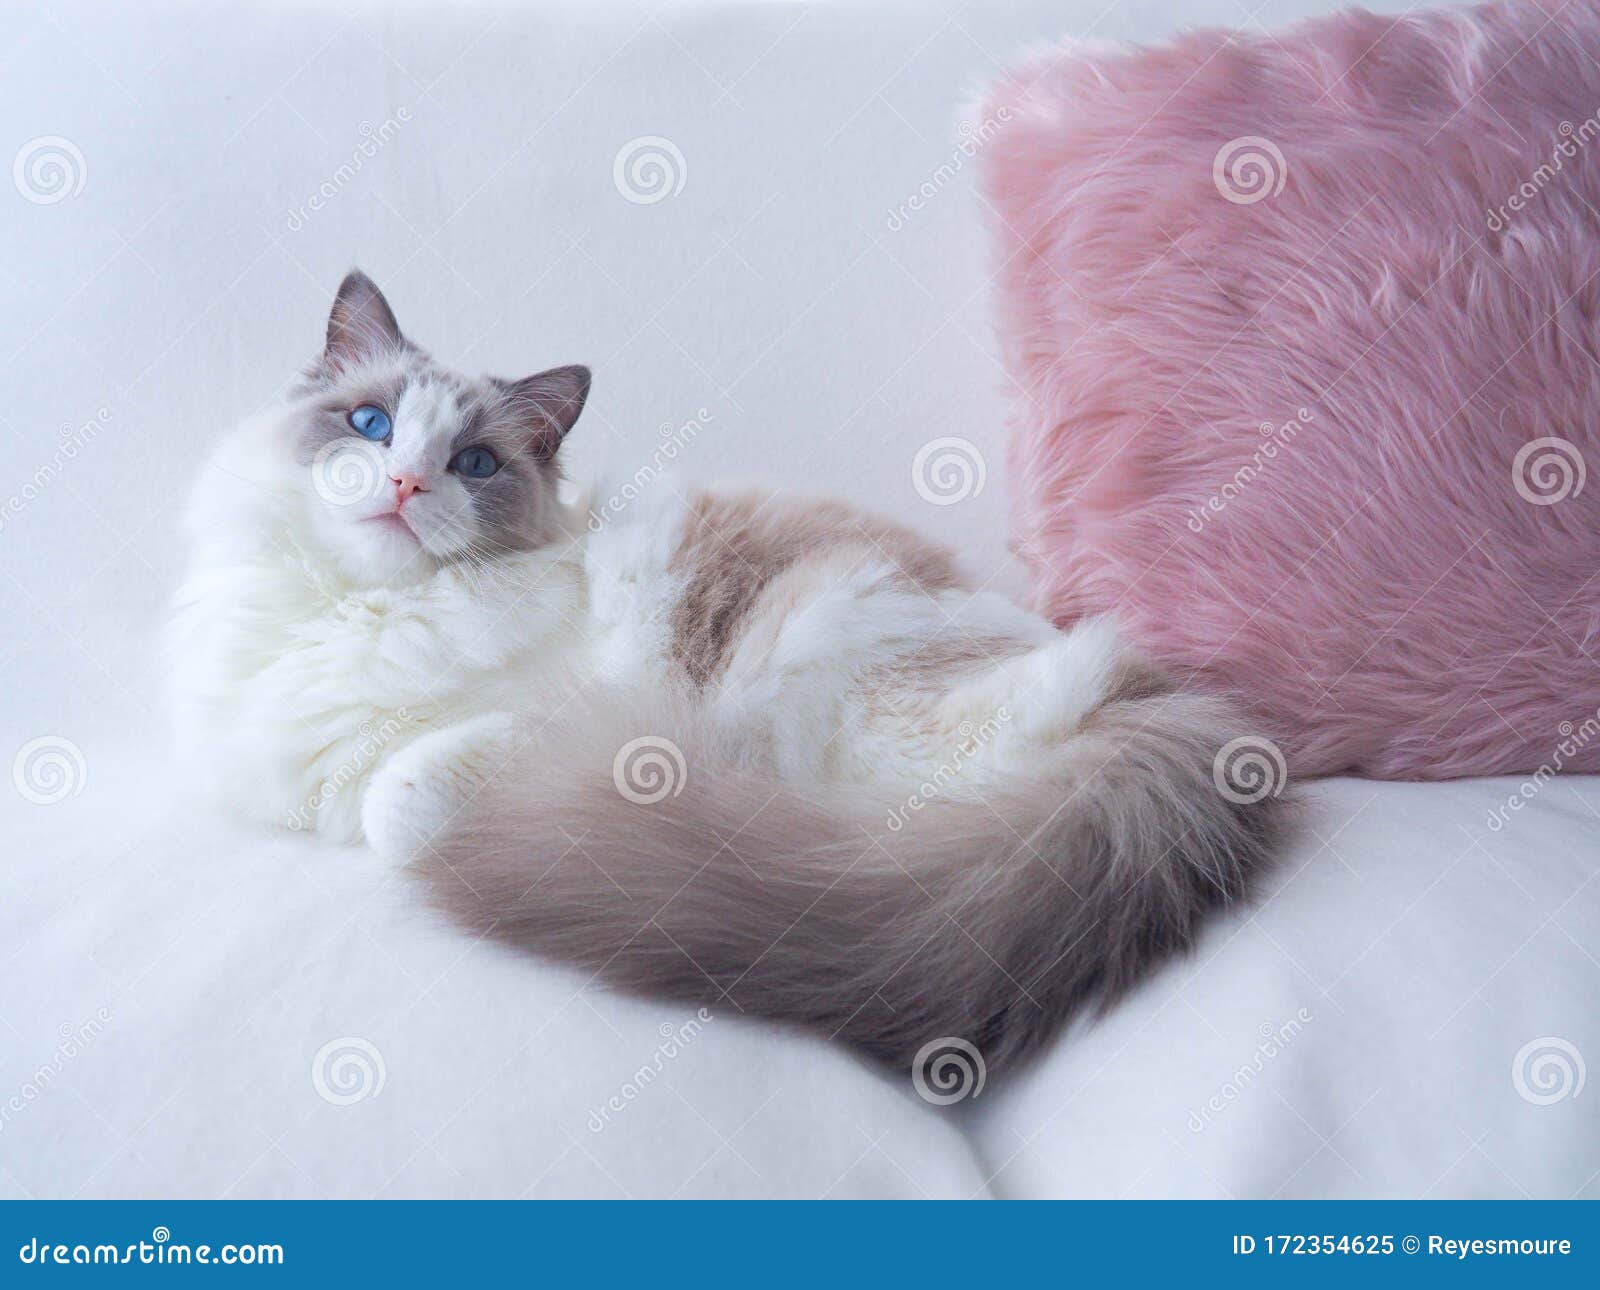 ragdoll cat with fluffy cushion.